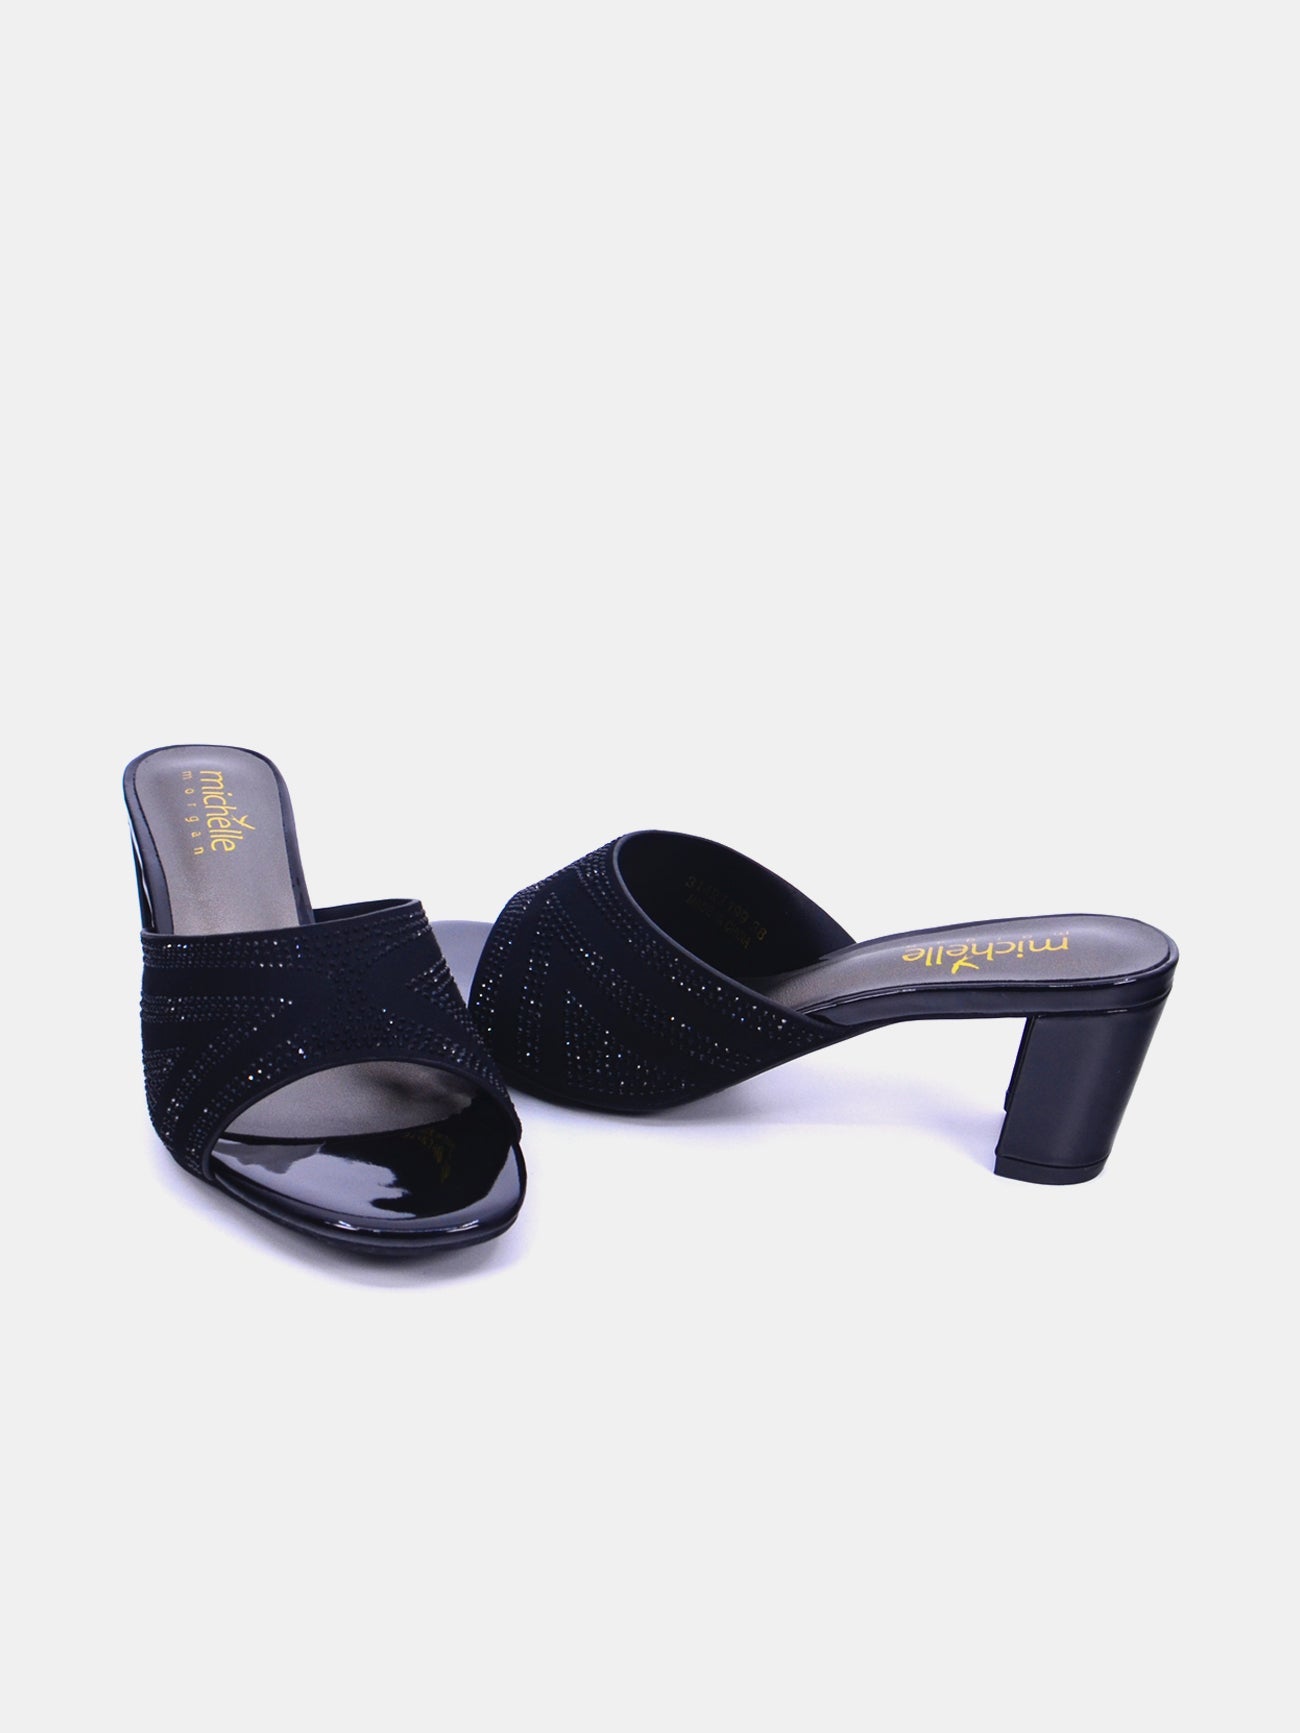 Michelle Morgan 314RJ199 Women's Heeled Sandals #color_Black